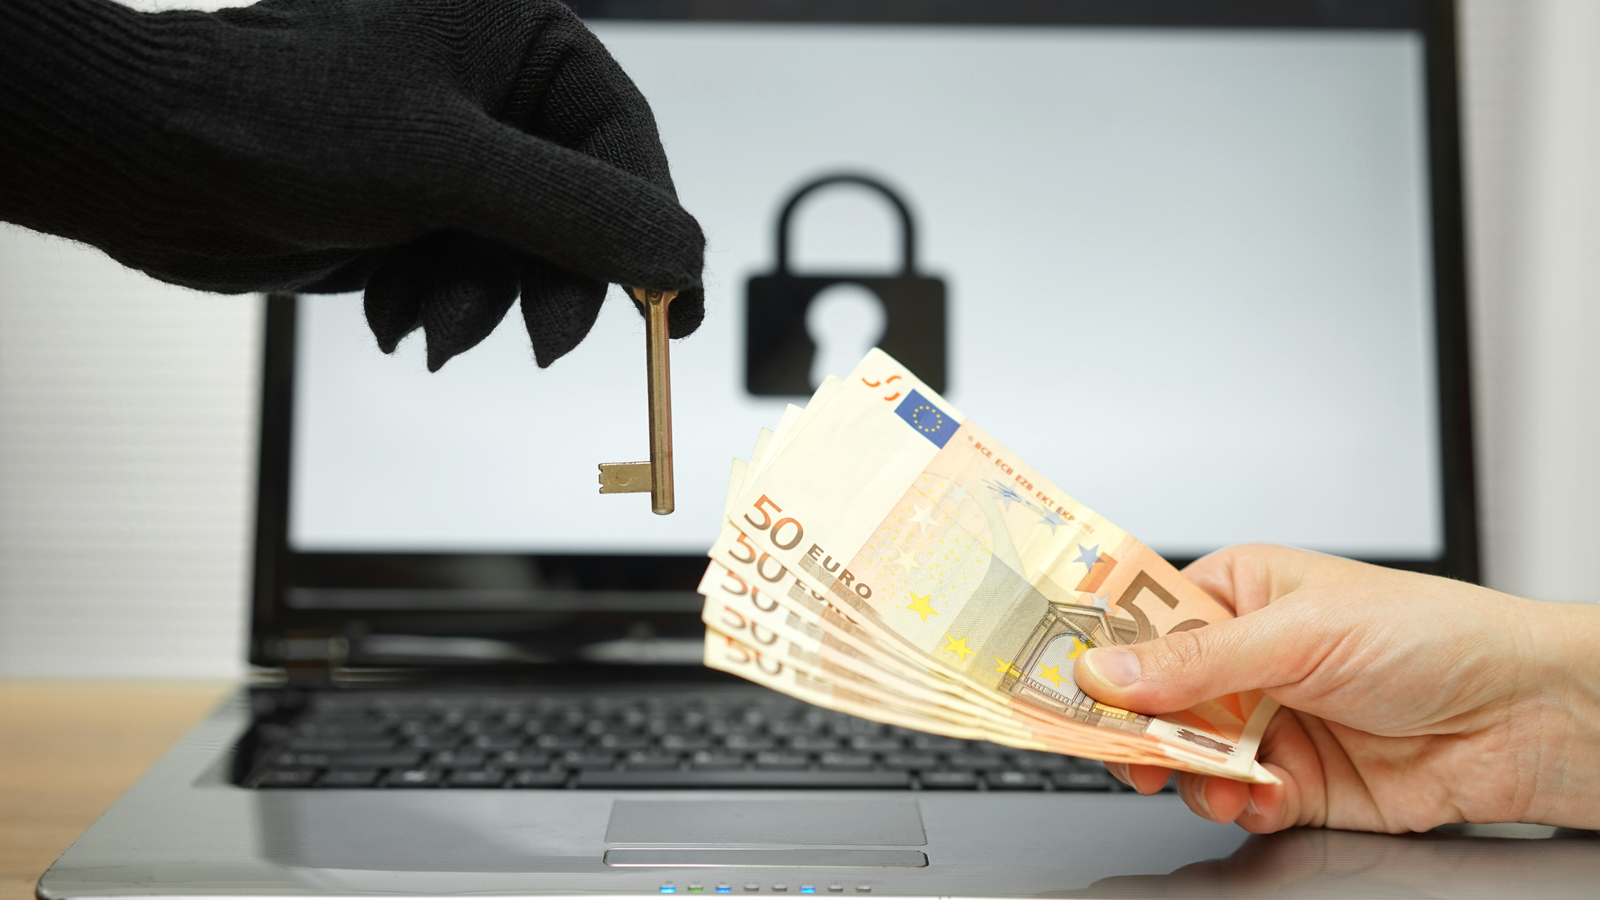 Cybersécurité : un nouveau groupe de pirates cible la France avec des ransomwares